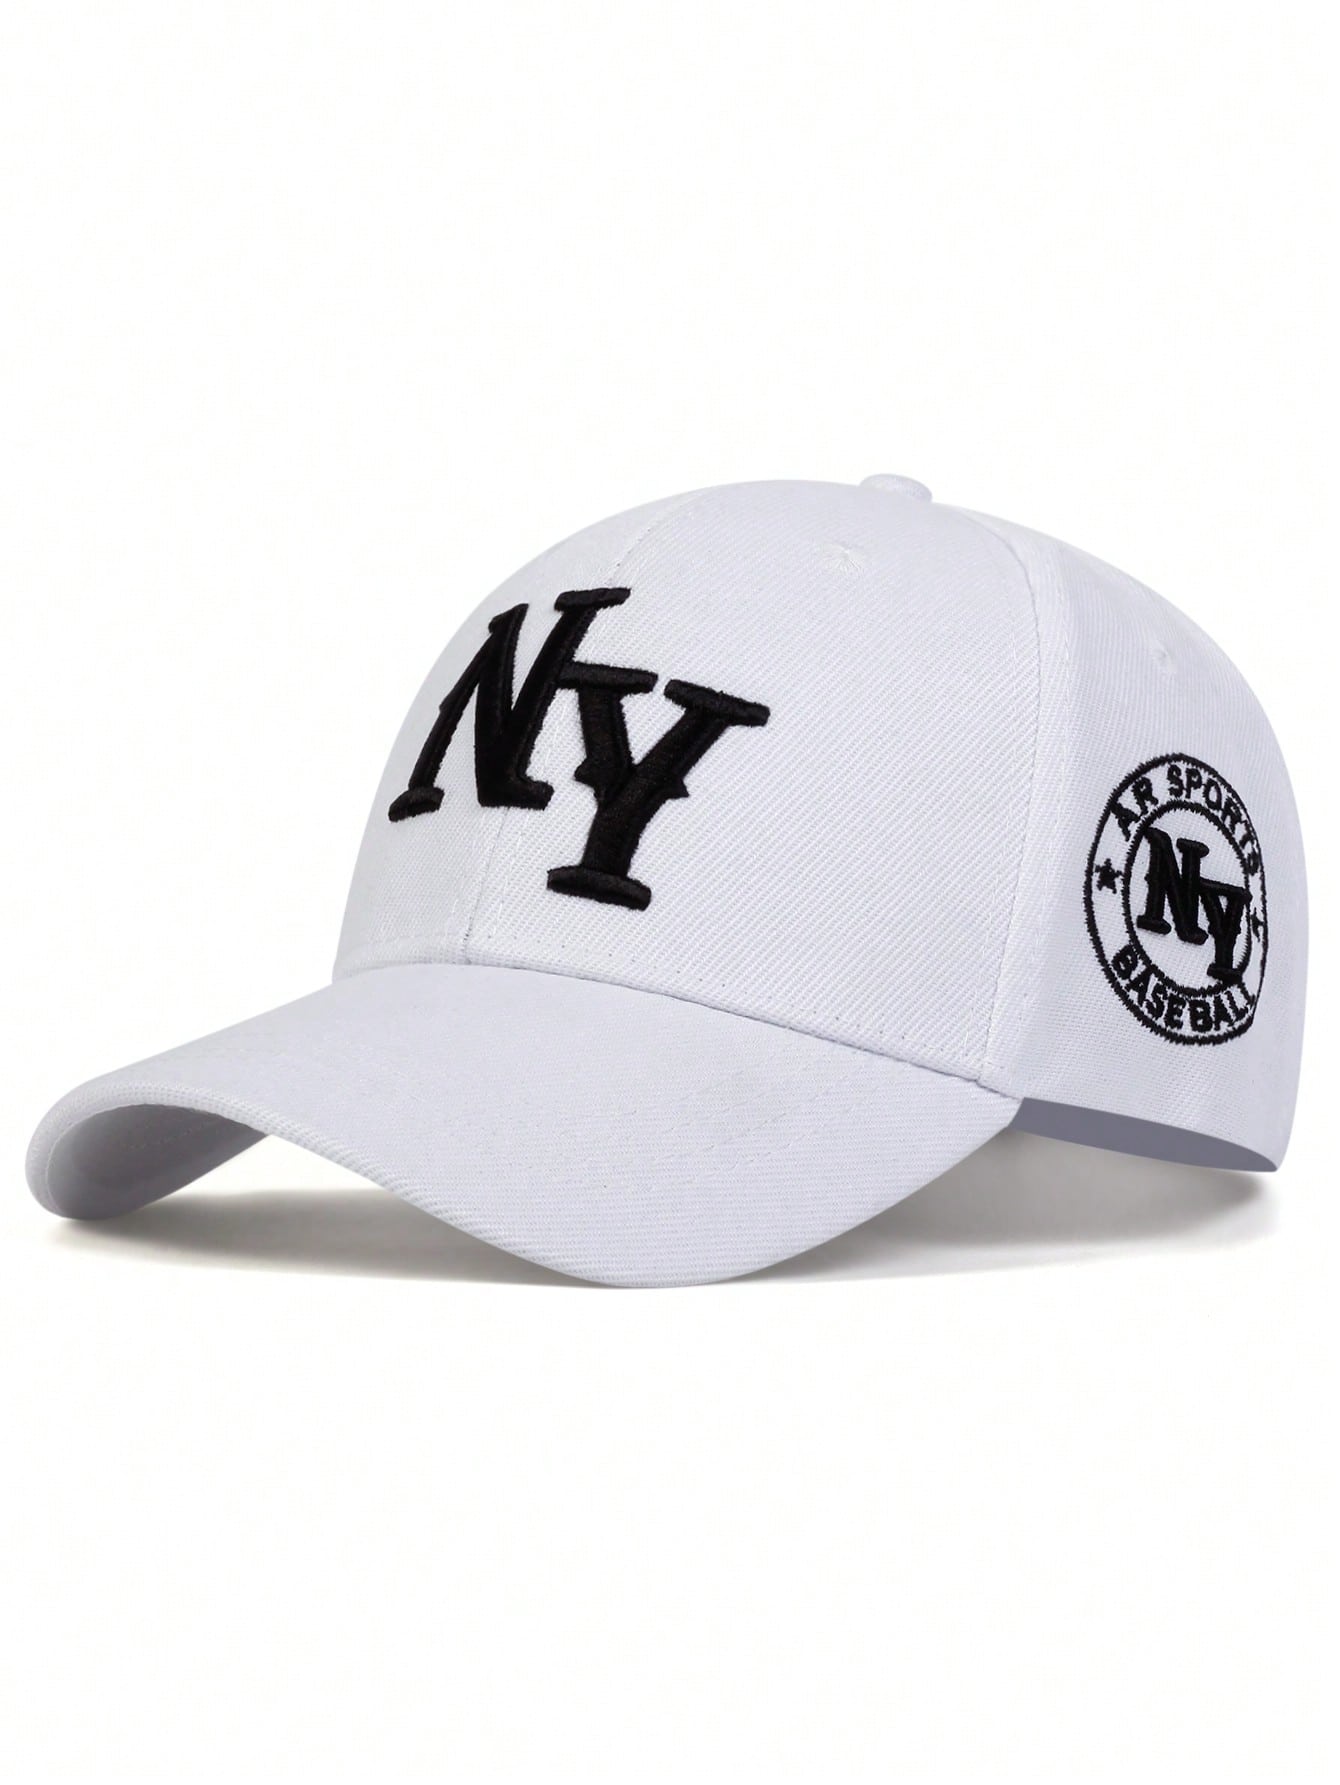 1 шт. мужская бейсболка с вышивкой букв «Нью-Йорк», белый хлопковая бейсболка с вышивкой для женщин и мужчин модная уличная спортивная шляпа от солнца регулируемая бейсболка унисекс бейсболка в